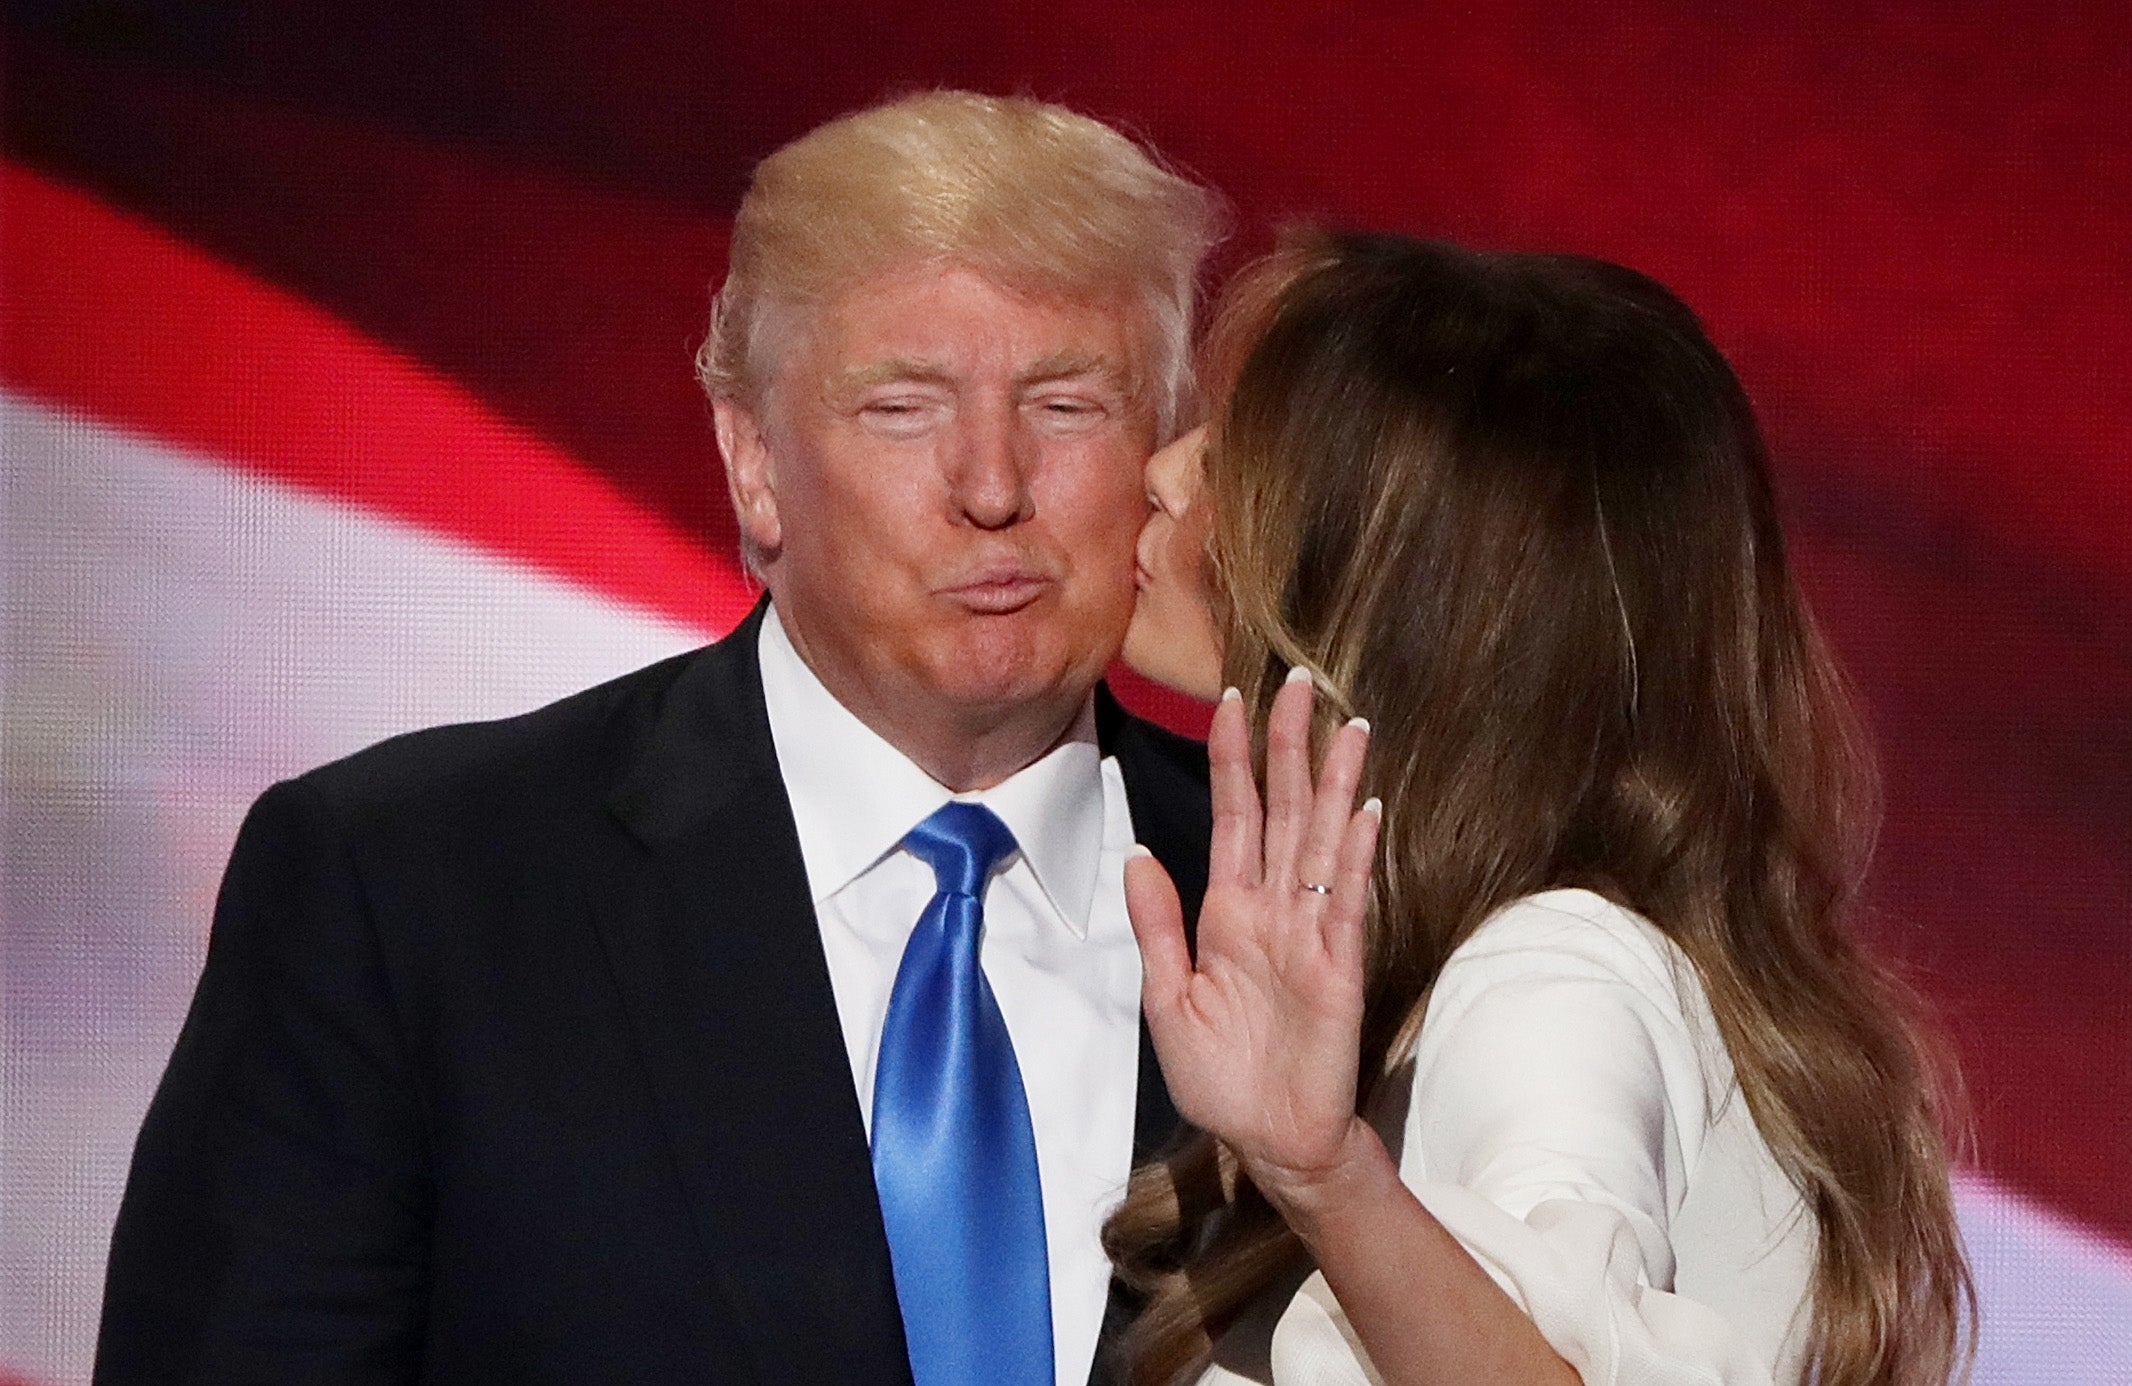 Melania Trump kisses her husband and presumptive Republican presidential nominee Donald Trump